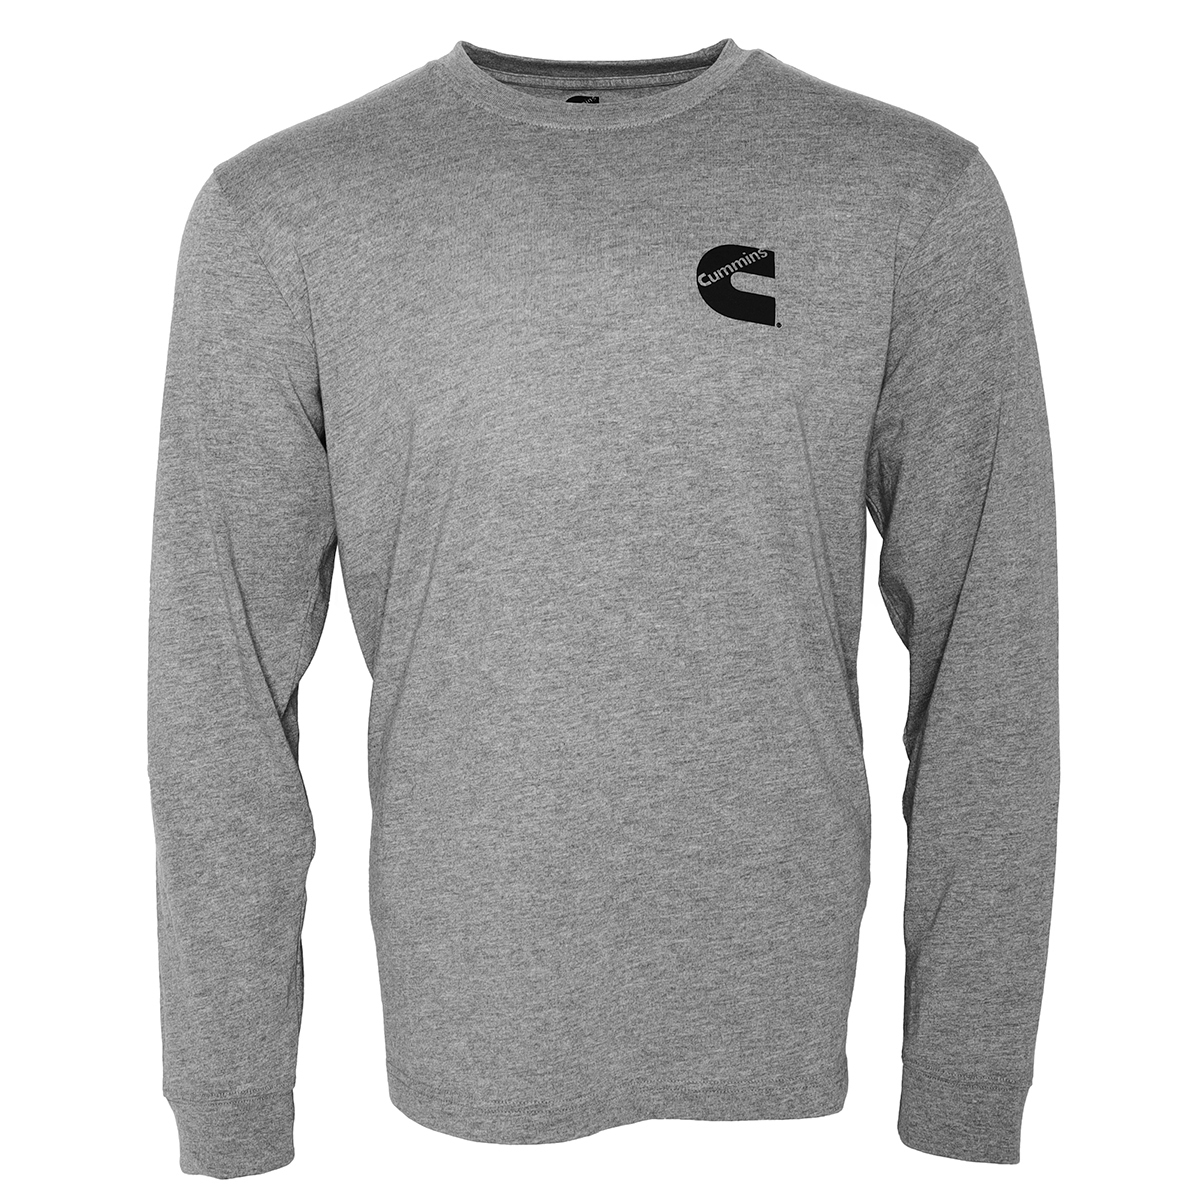 Cummins Unisex Long Sleeve T-shirt Cotton Blend Tee in Sport Gray CMN4788 - 4XL